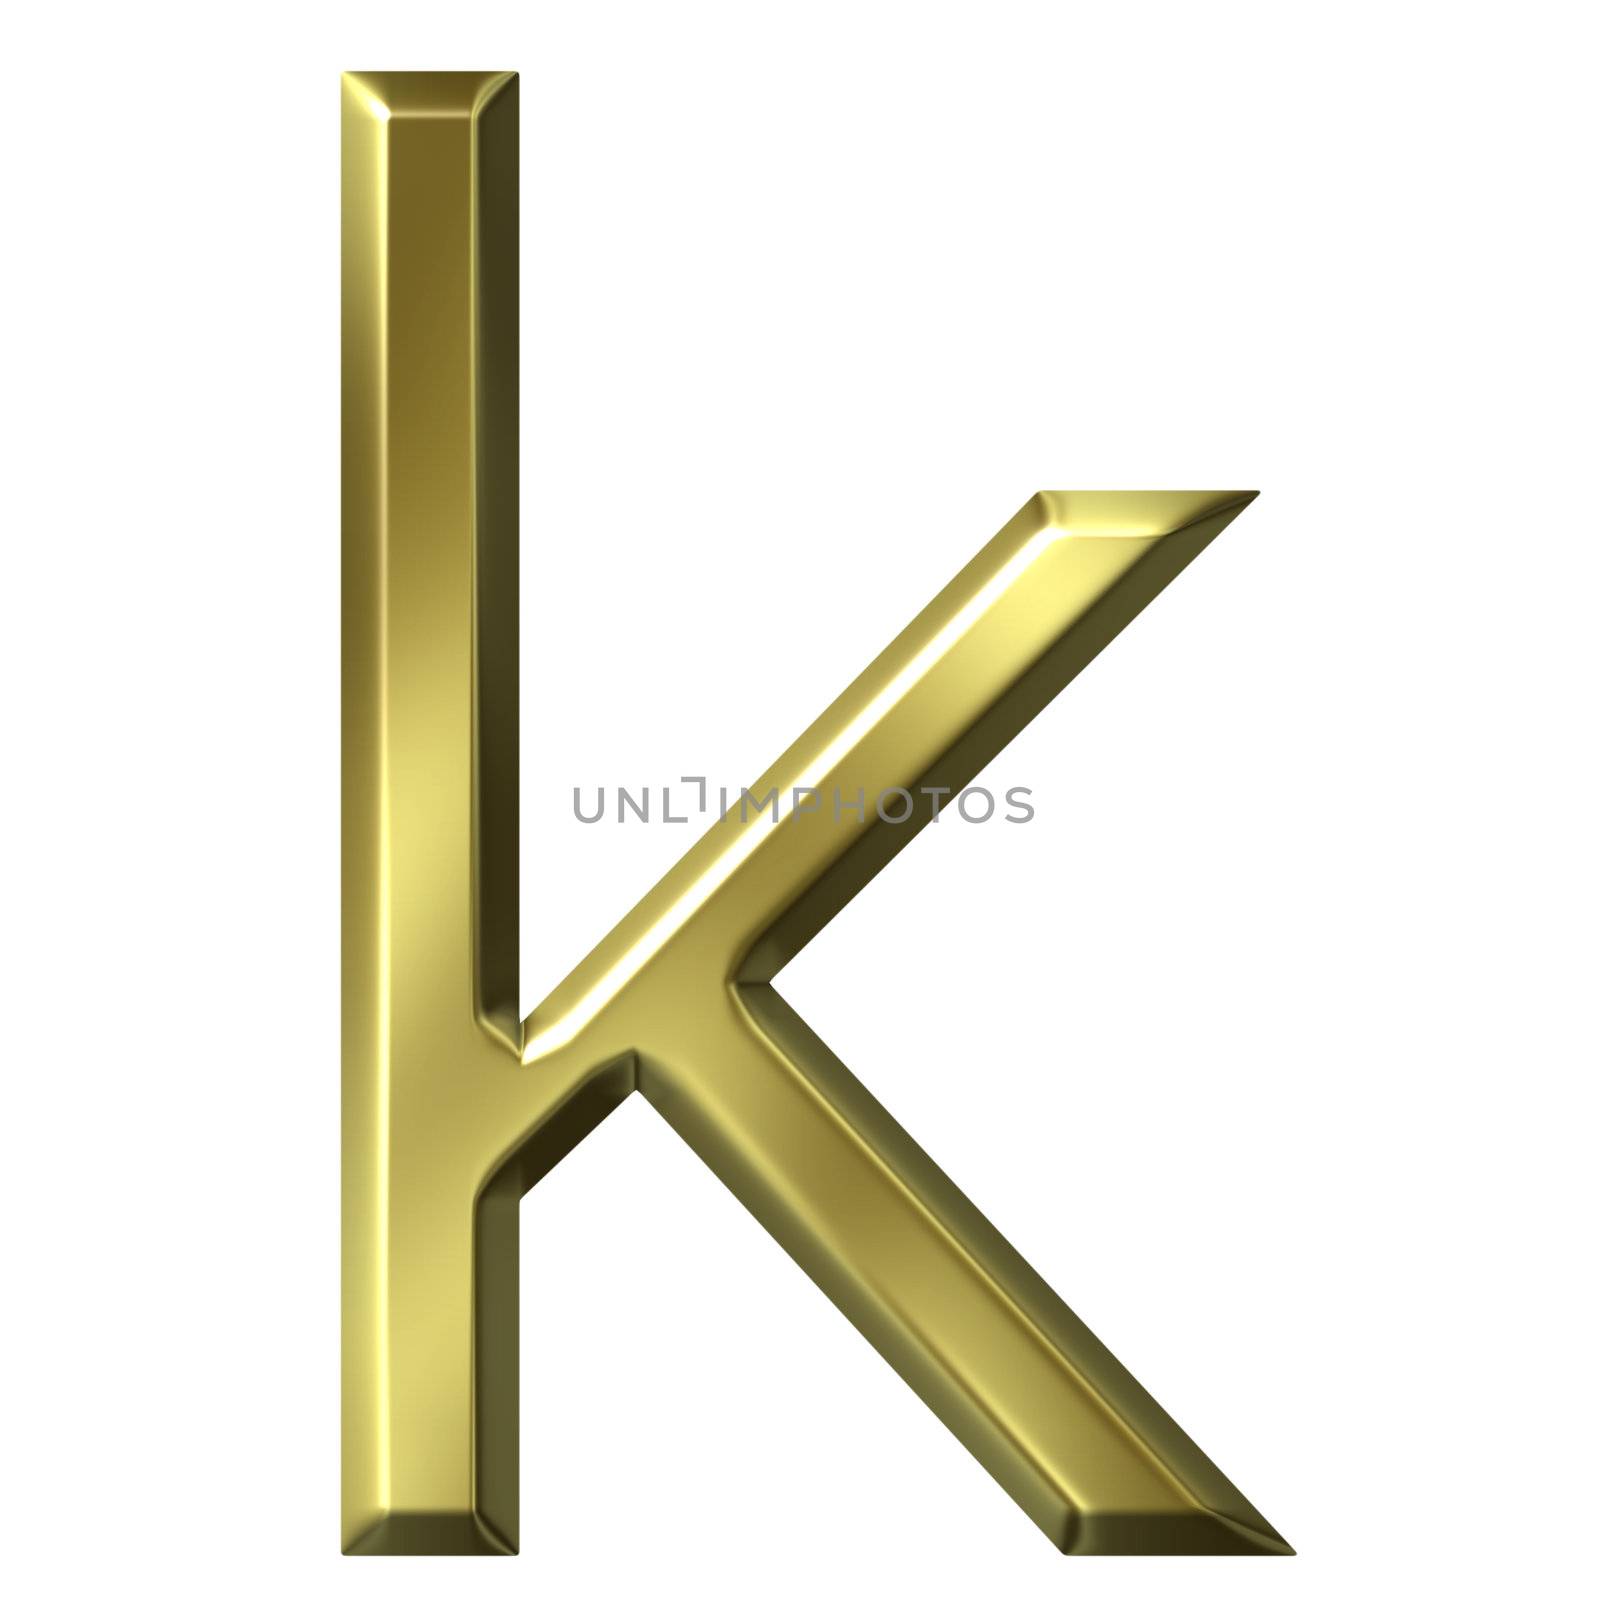 3d golden letter k isolated in white